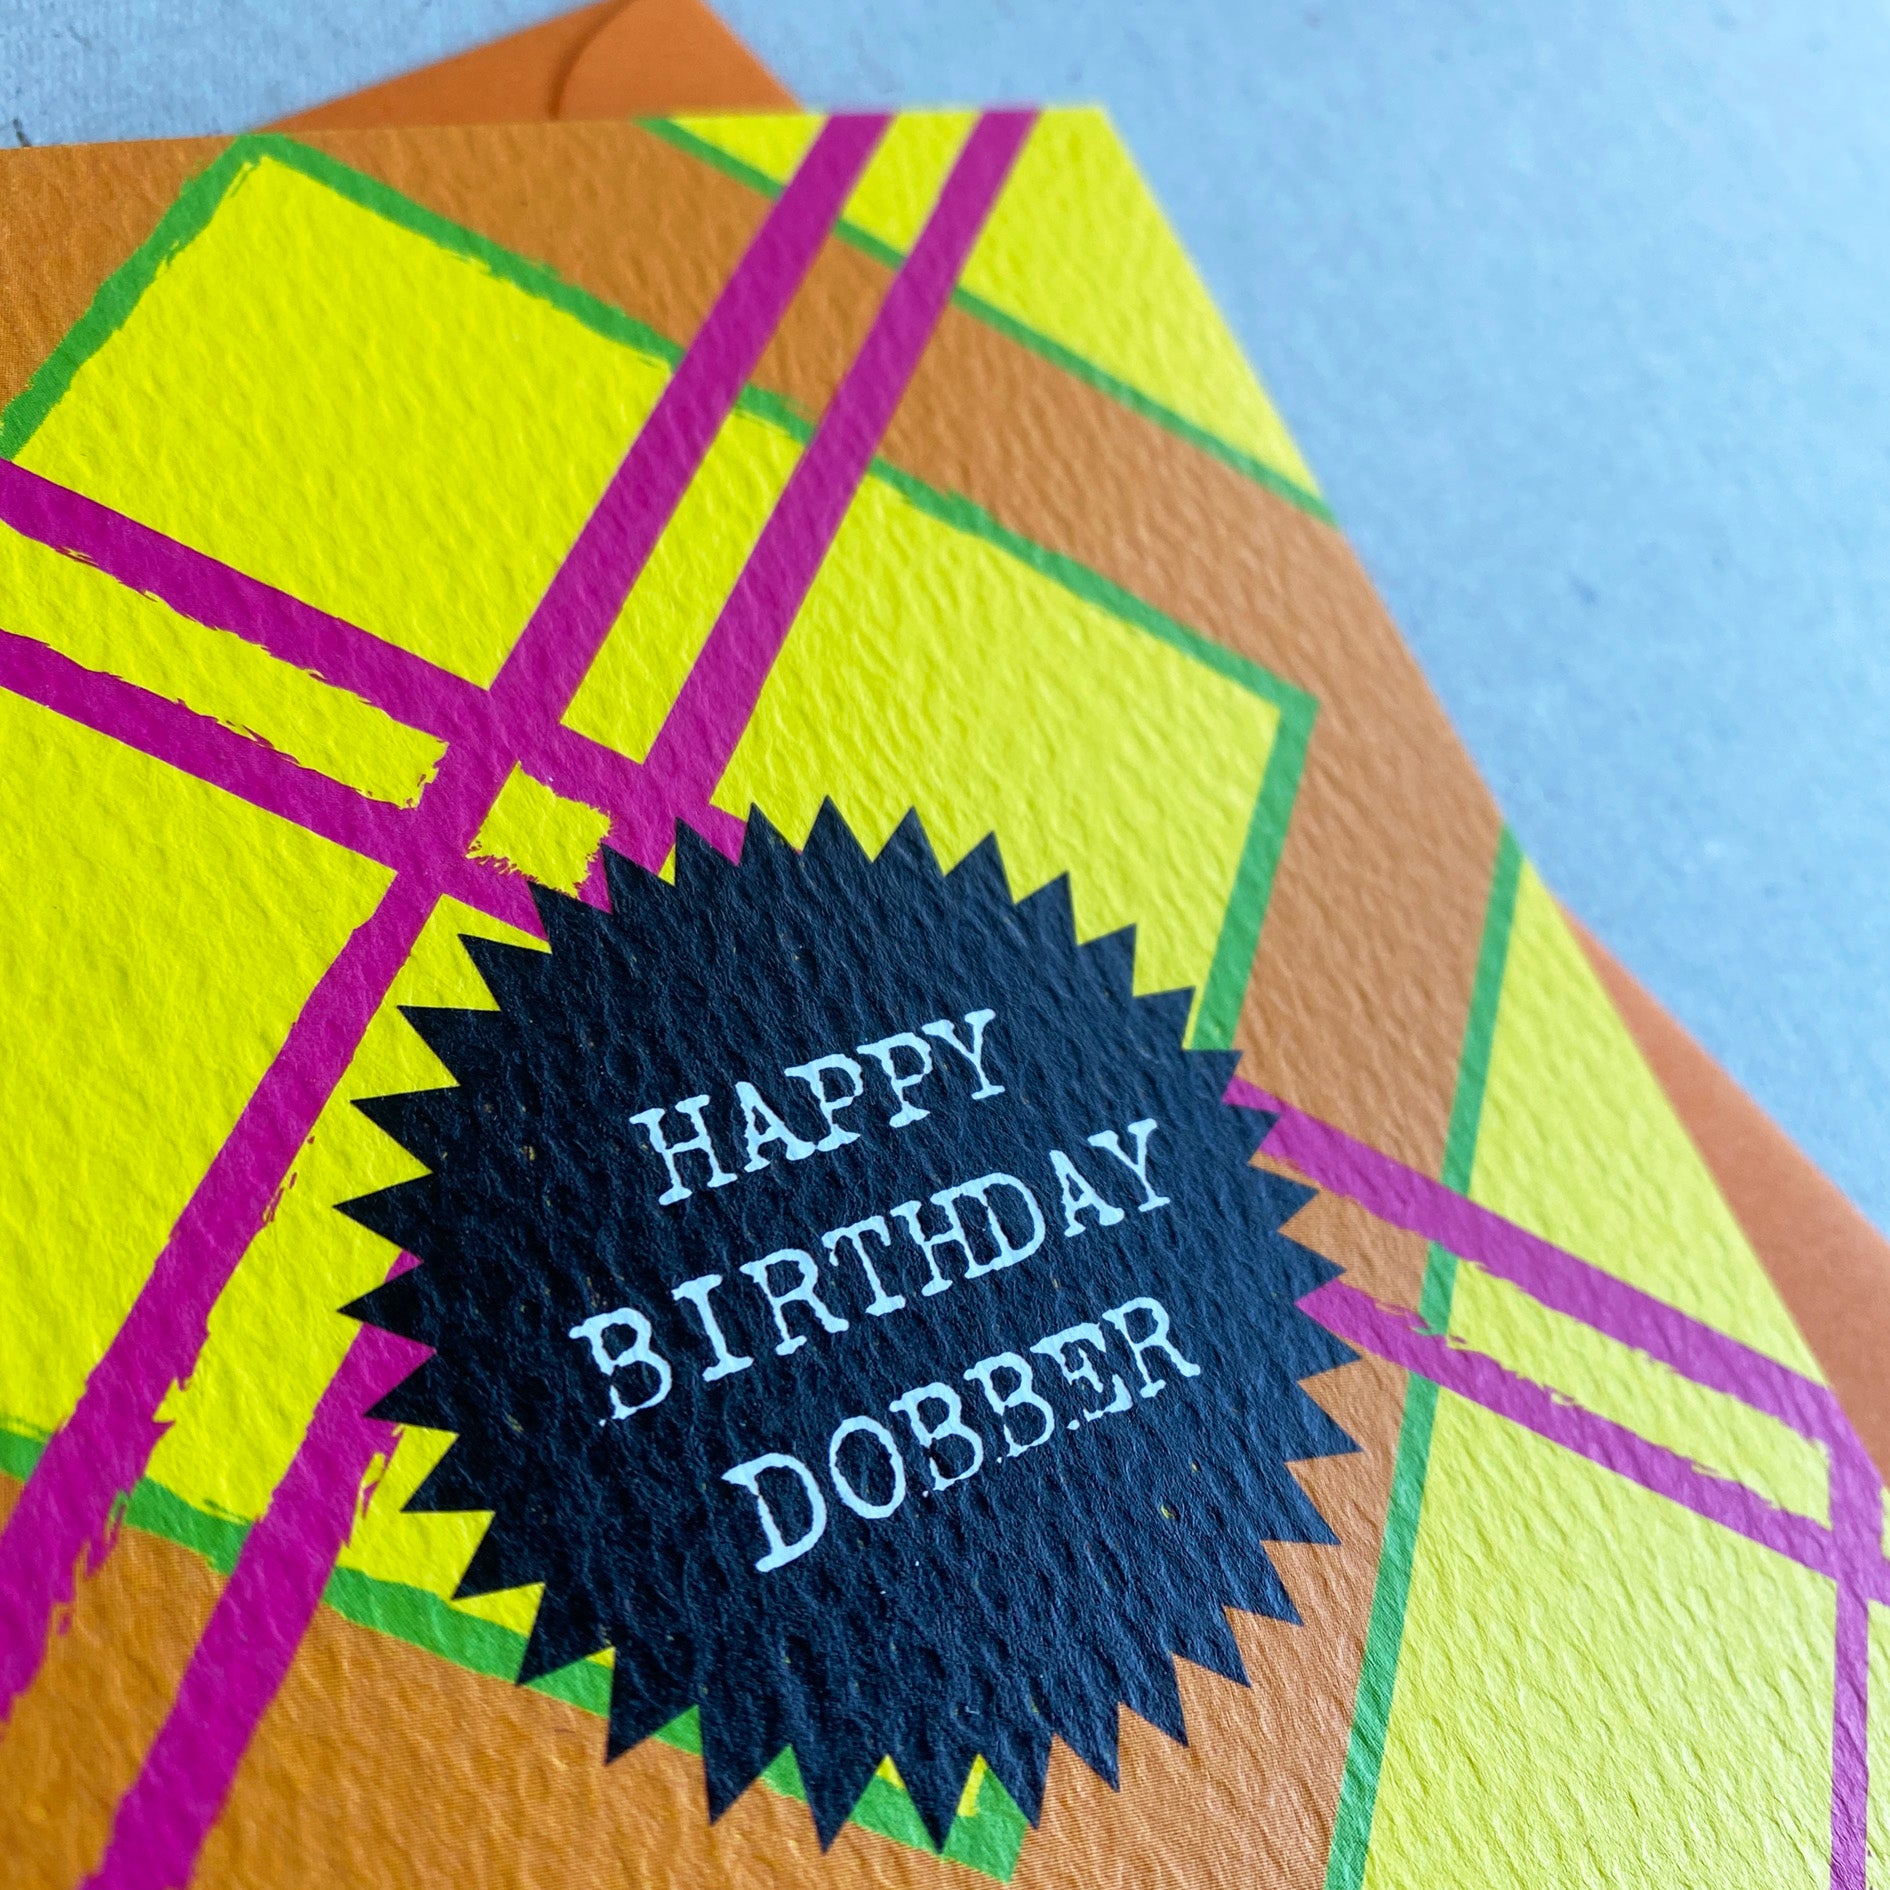 'Happy Birthday Dobber' Scottish Insult Card - HiyaPal